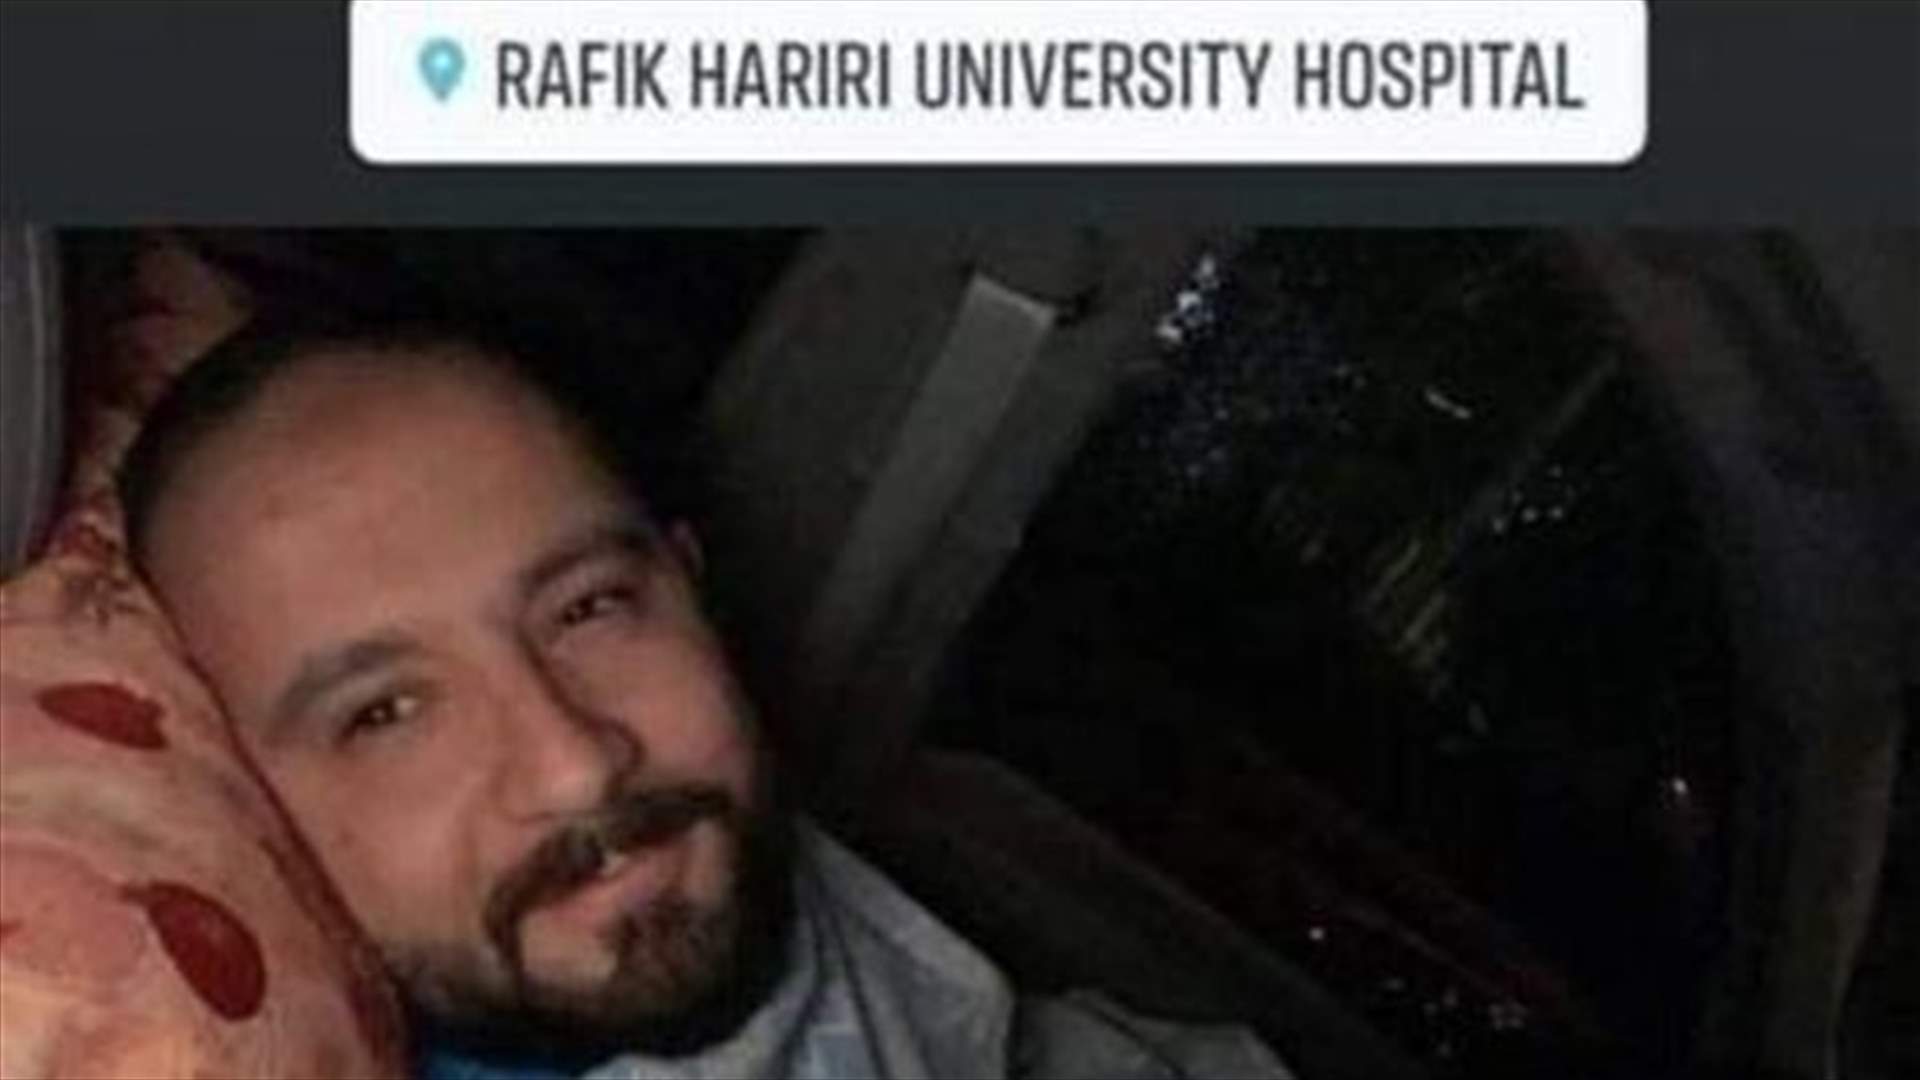 طبيب مستشفى الحريري بعد أن نشر صورة له في سيارته: فُسّرت لدى البعض بطريقة أخرى...